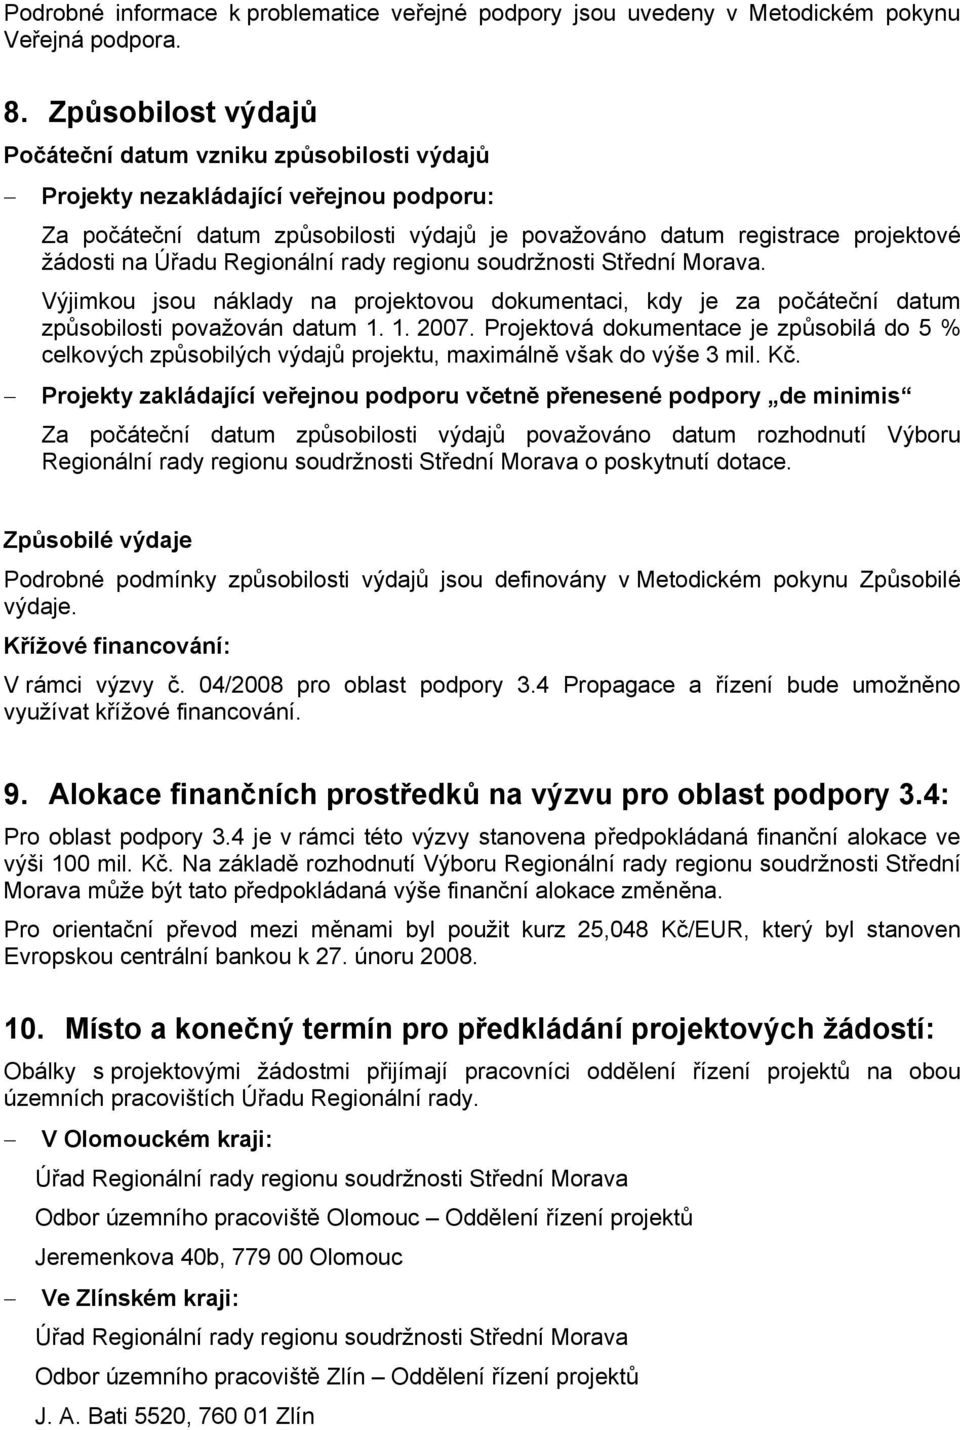 Úřadu Regionální rady regionu soudržnosti Střední Morava. Výjimkou jsou náklady na projektovou dokumentaci, kdy je za počáteční datum způsobilosti považován datum 1. 1. 2007.